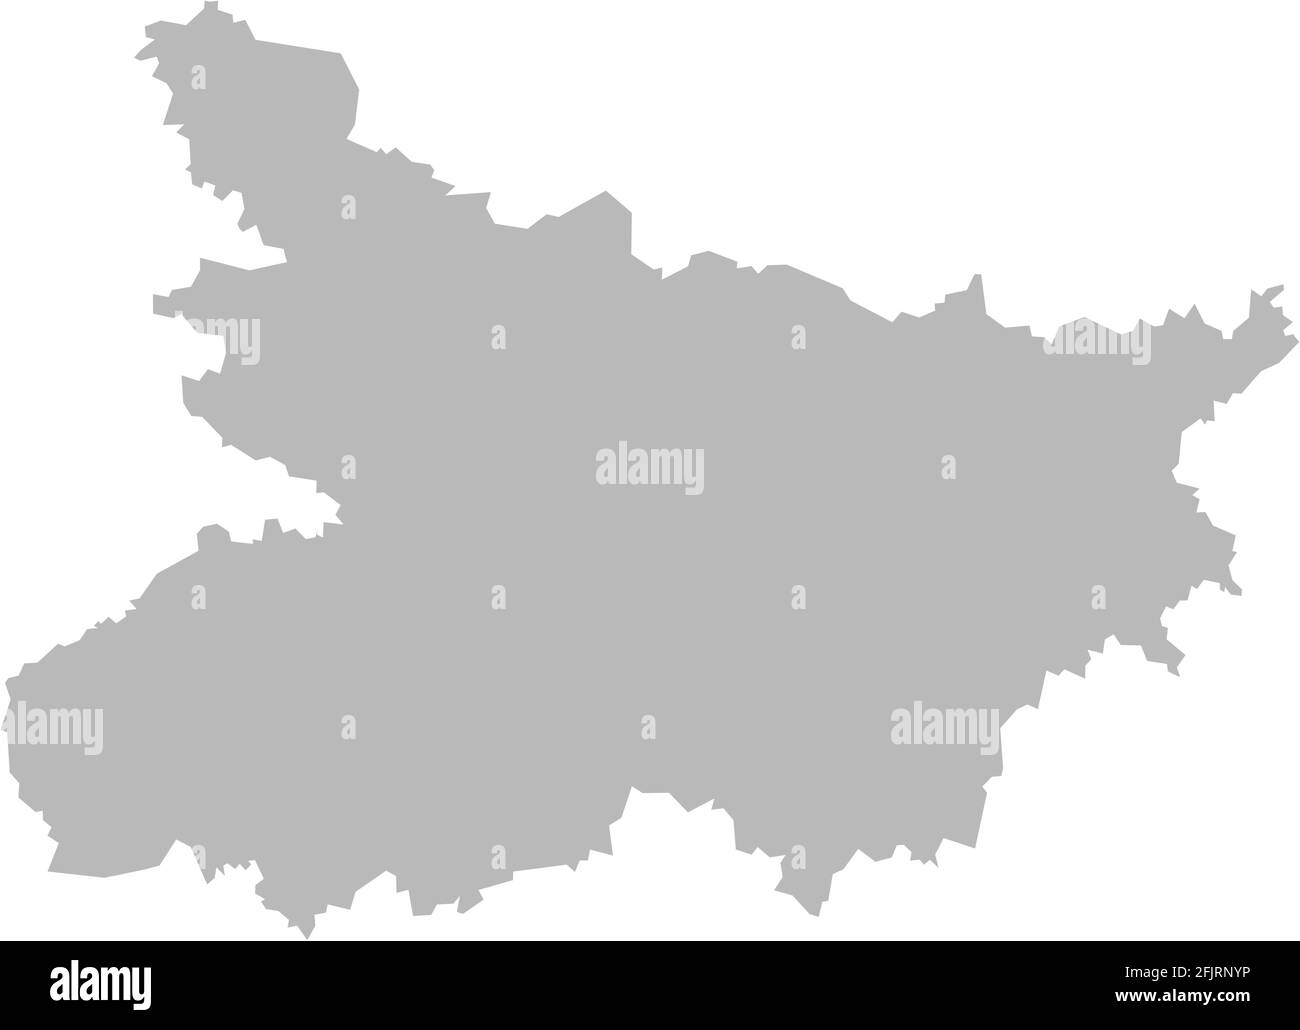 Mappa dello stato indiano di Bihar. Sfondo grigio chiaro. Progettazione grafica dei concetti aziendali. Illustrazione Vettoriale